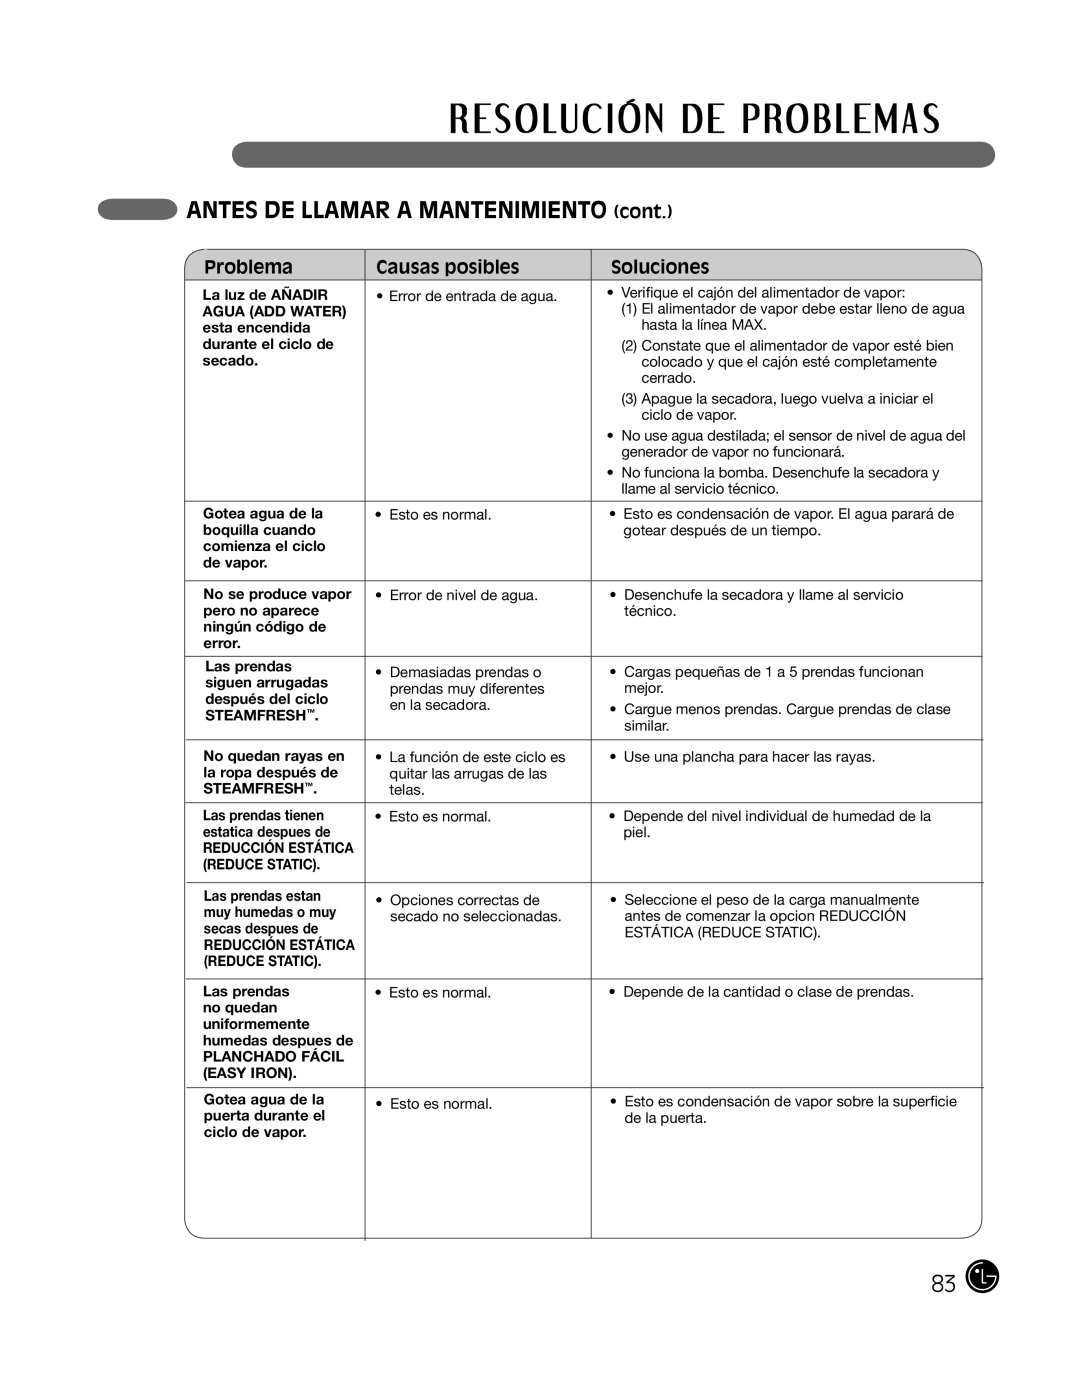 LG Electronics P154 manual ANTES DE LLAMAR A MANTENIMIENTO cont, Problema, Causas posibles, Soluciones 